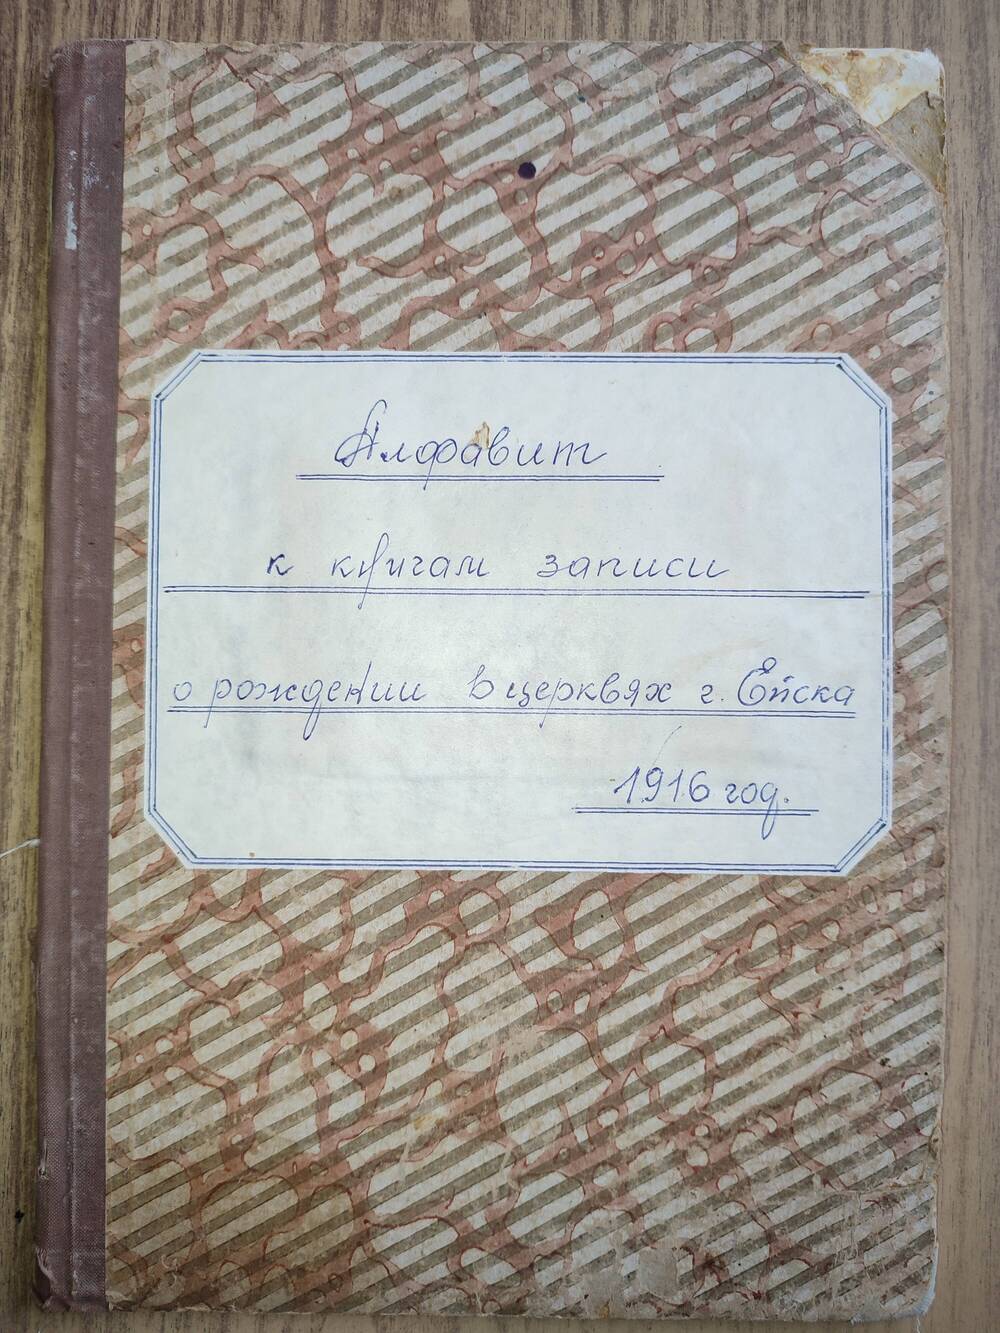 Алфавит к книгам записи о рождении в церквях Ейска за 1916 г.